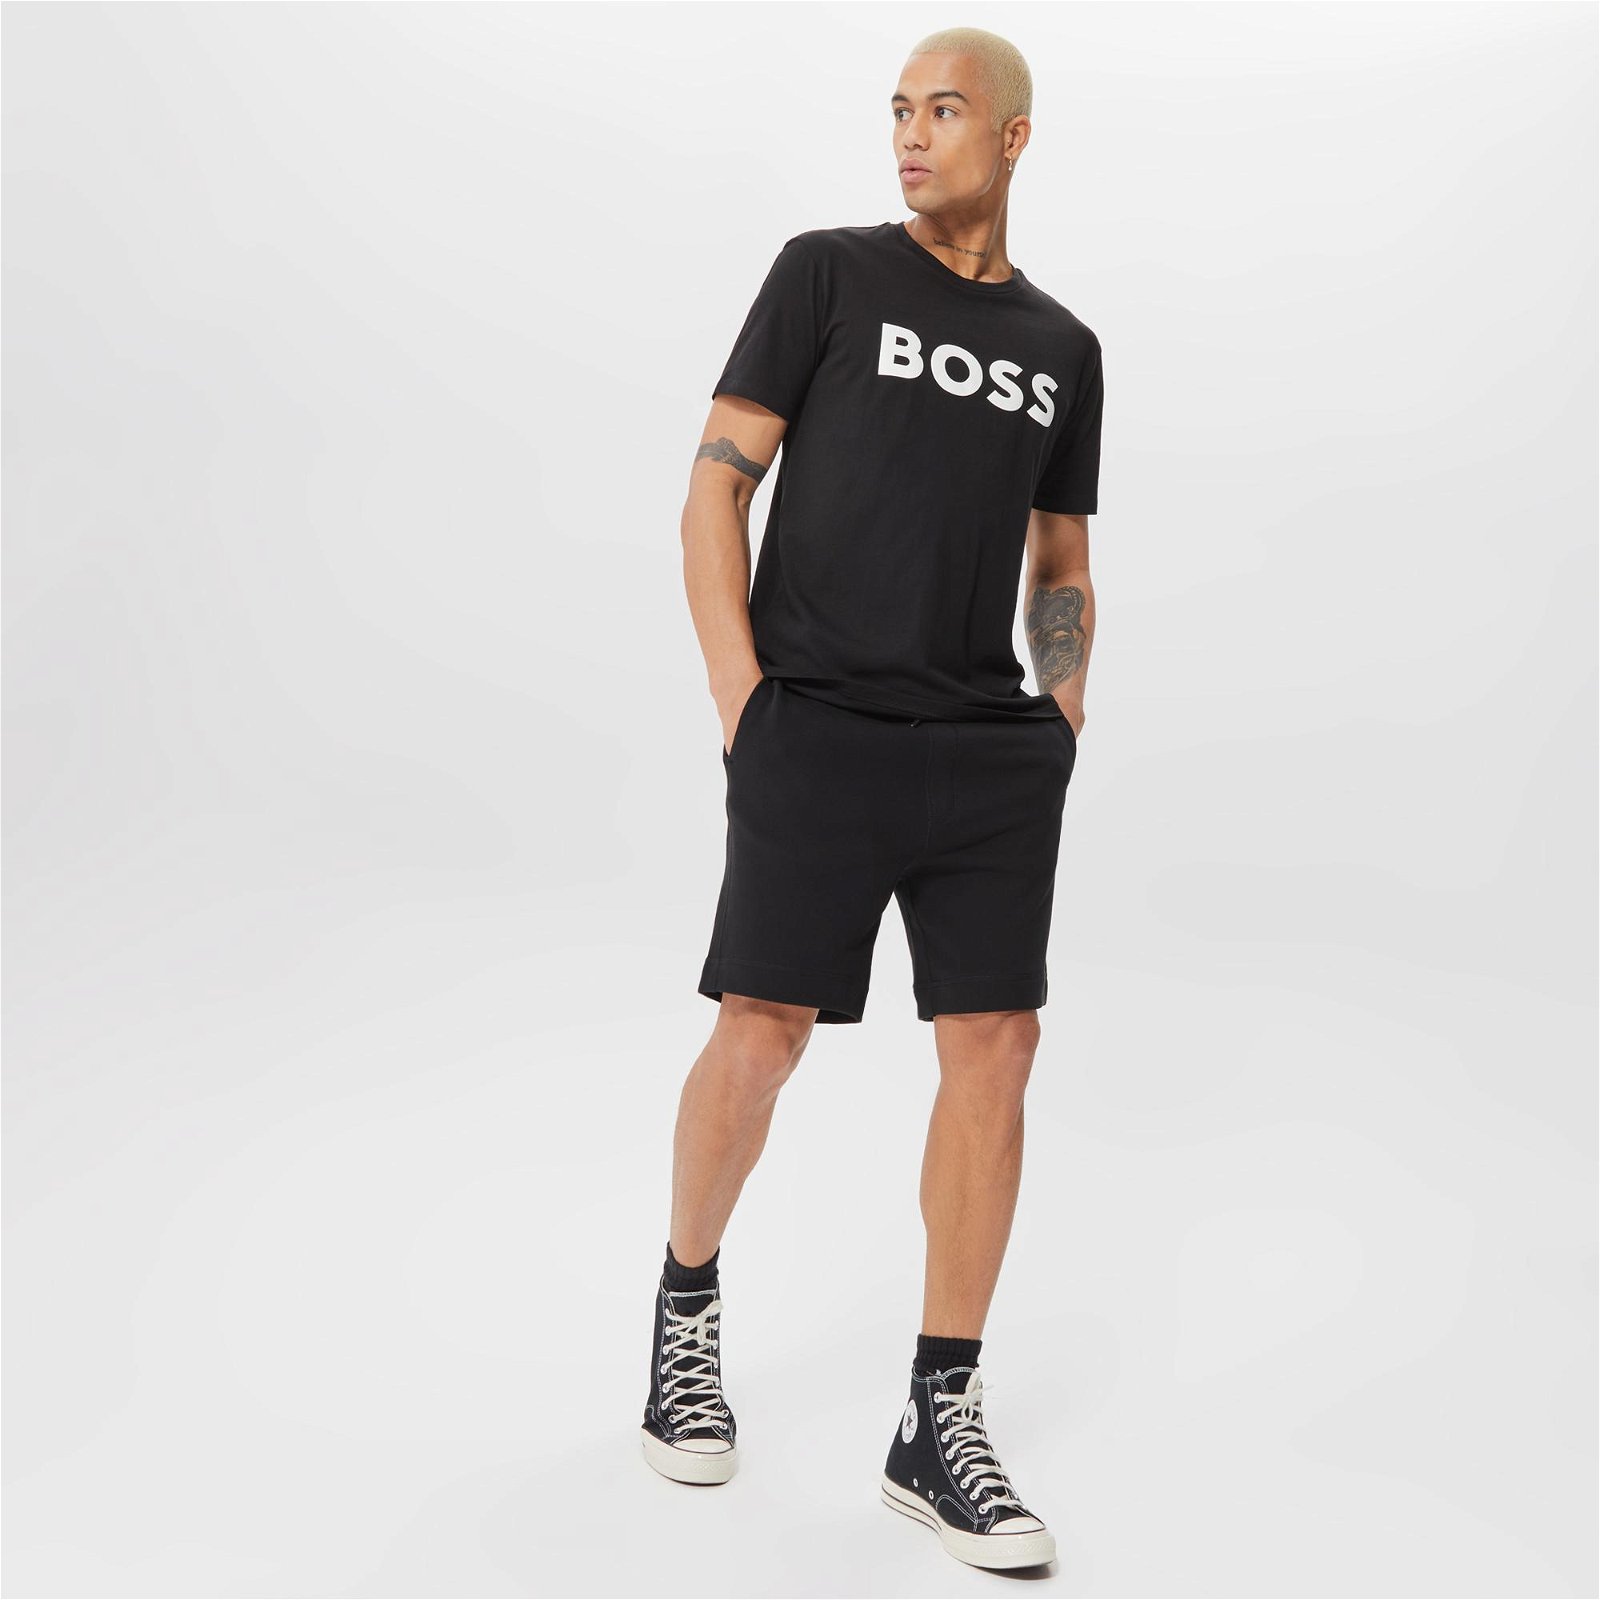 Boss Thinking Erkek Siyah T-Shirt